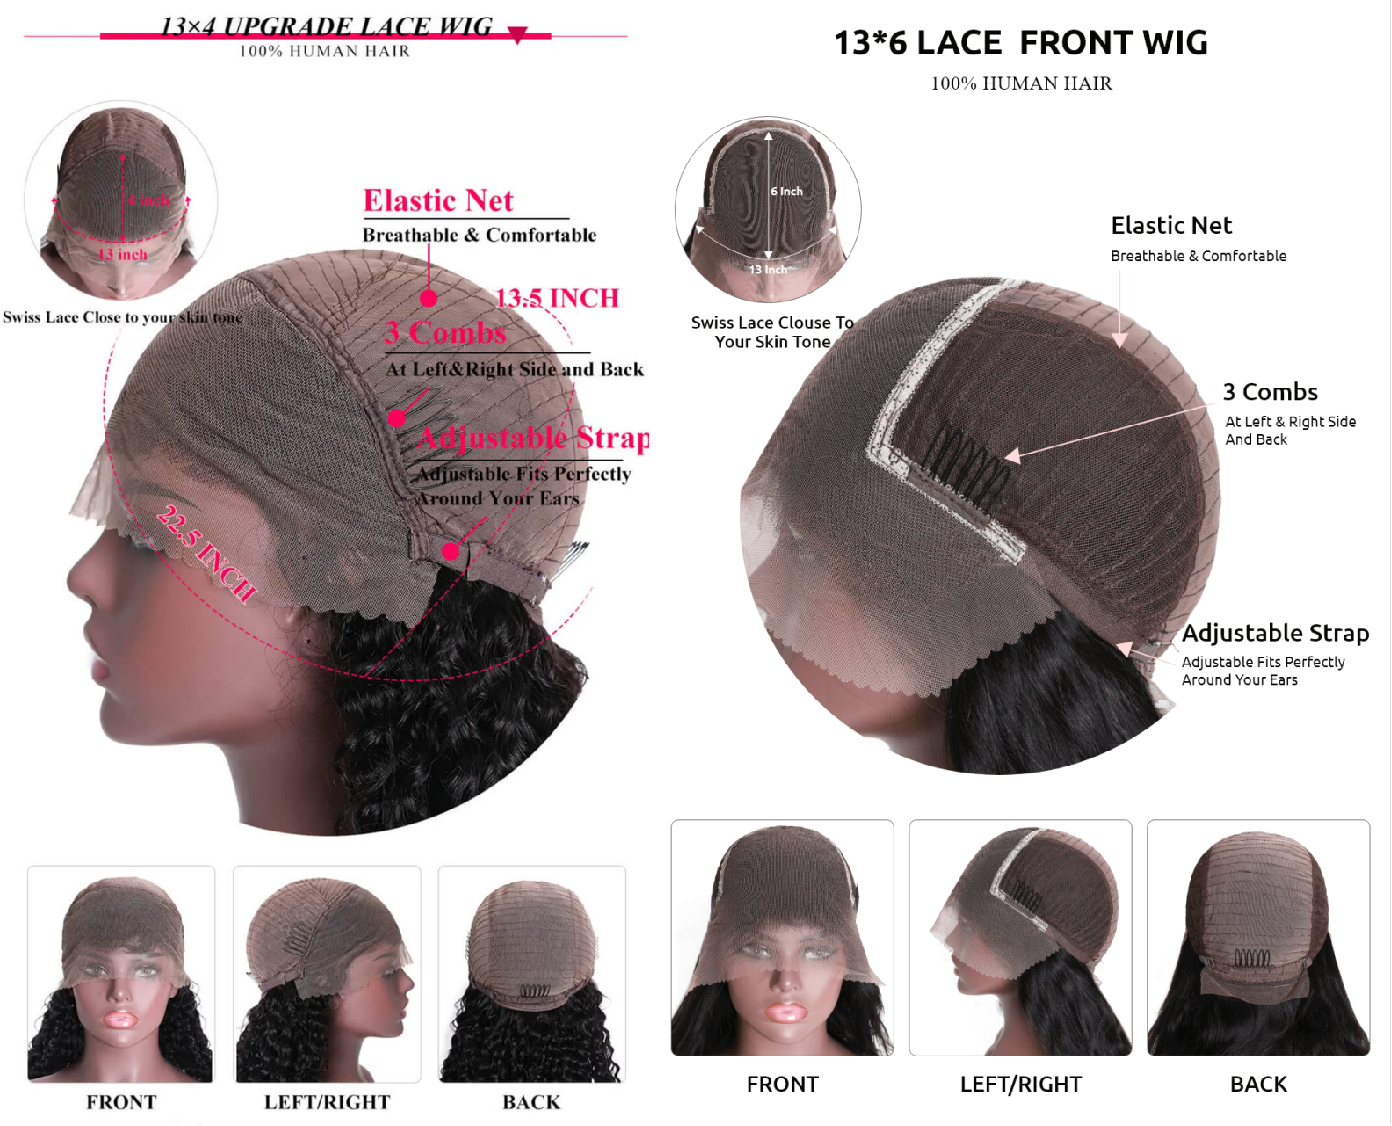 lace front wigs,13x4 lace front wigs, 13x6 lace front wigs